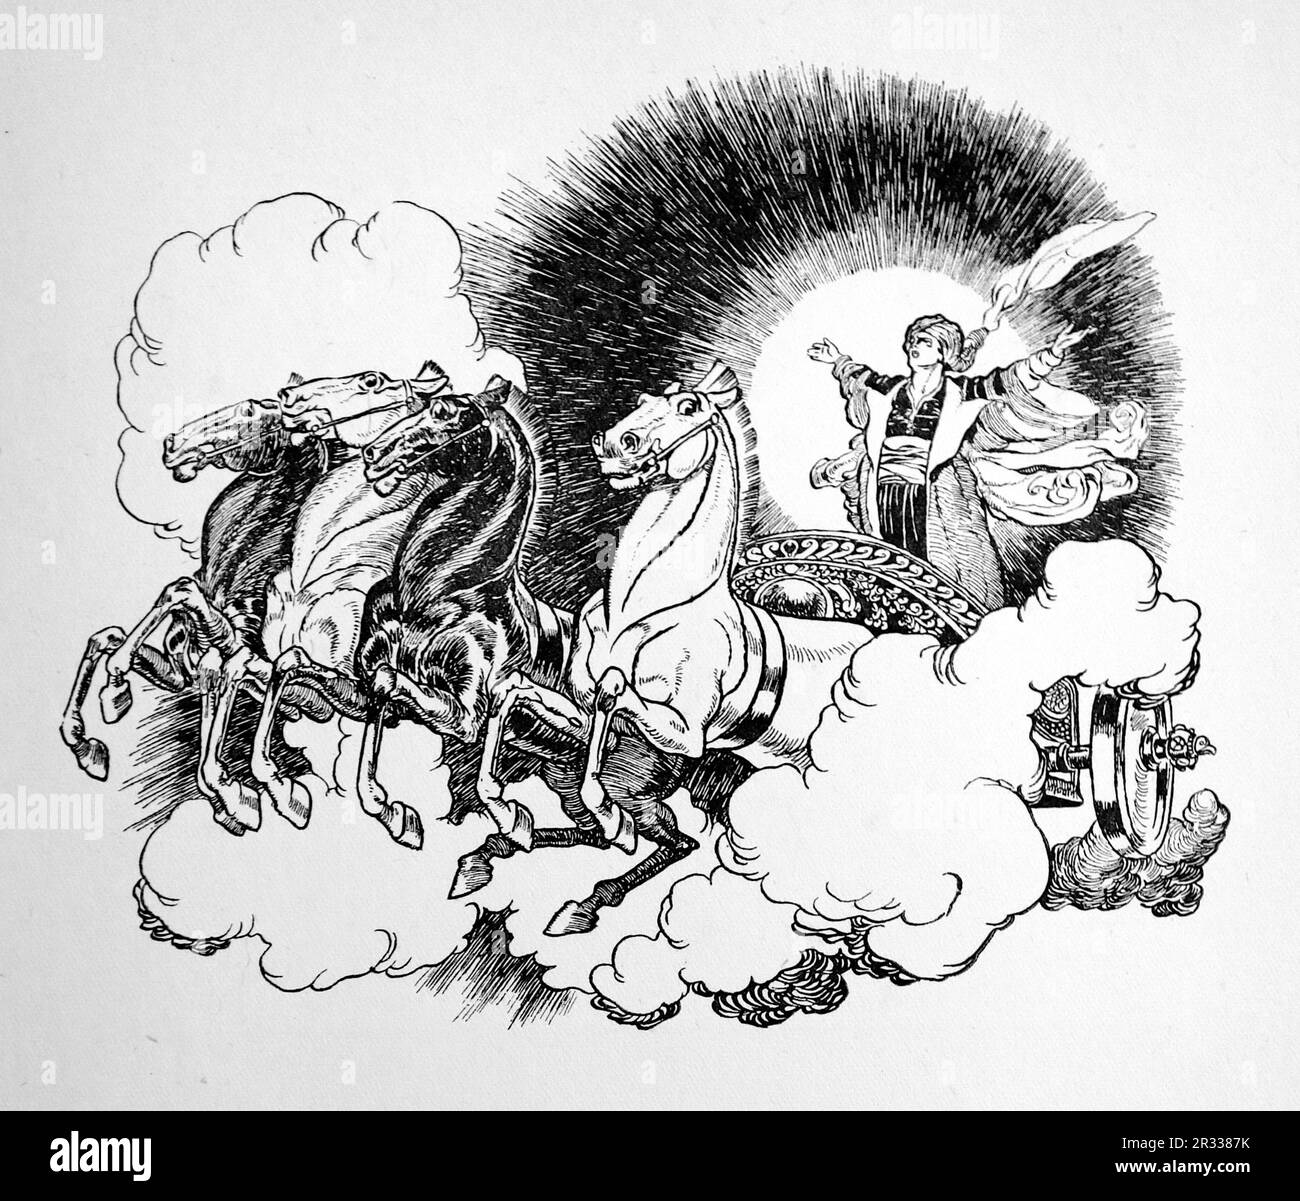 Da parte di Rene Bull Disegno a linee, personaggio con braccia distese su un carro disegnato da quattro cavalli nelle nuvole. Dal Rubaiyat di Omar Khayyam. Foto Stock